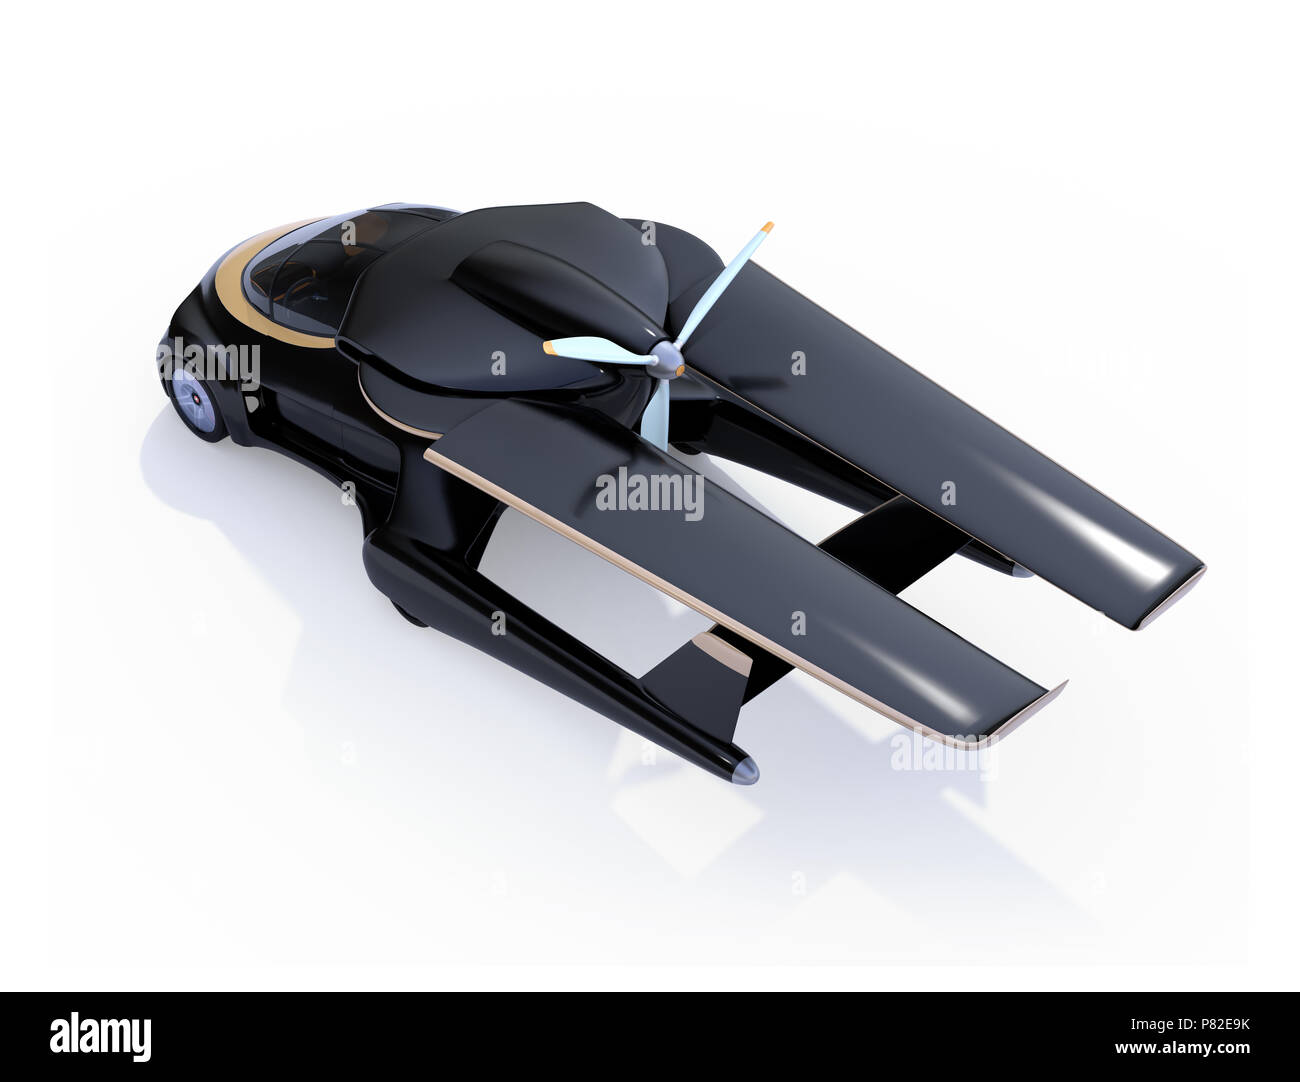 Voiture autonome futuriste isolé sur fond blanc. Les ailes s'est tourné vers l'arrière dans un format compact. Voiture volante concept. Le rendu 3D image. Banque D'Images